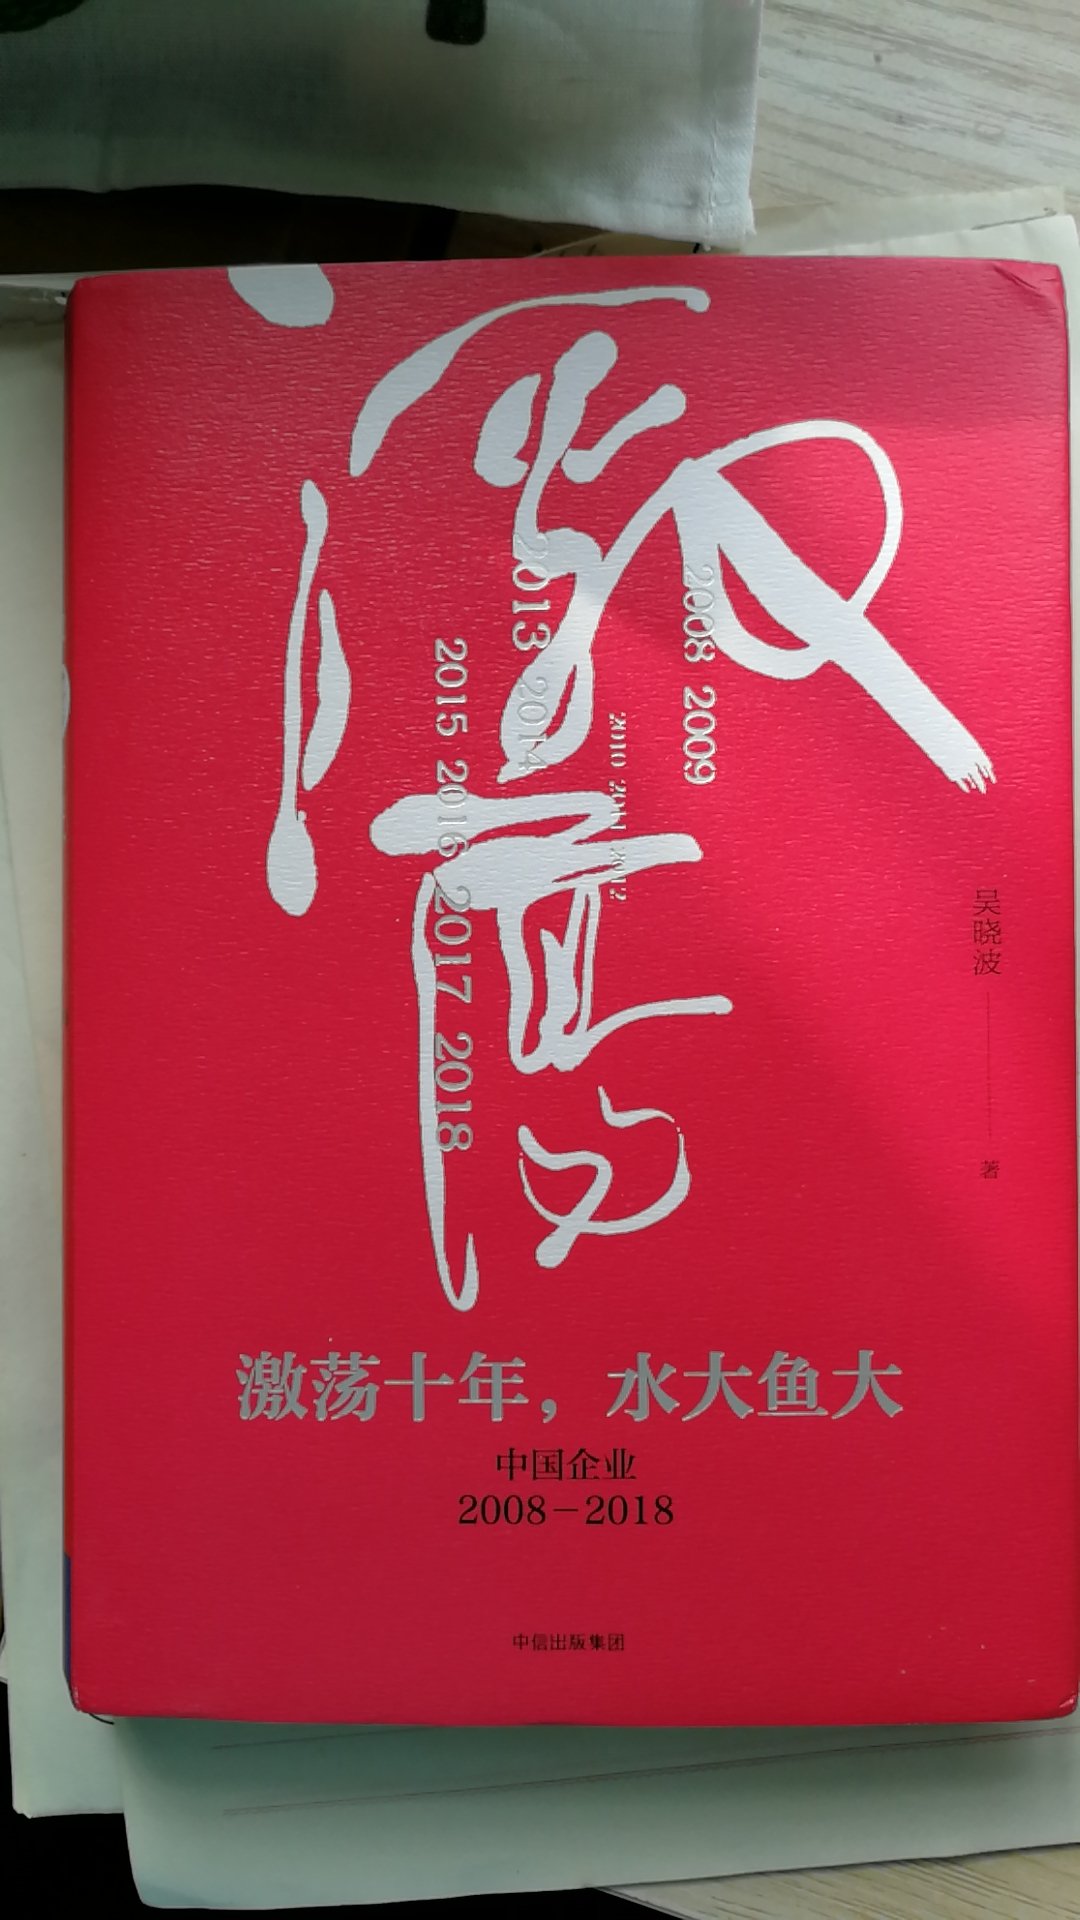 一直都很喜欢吴老师的书，通俗易懂。